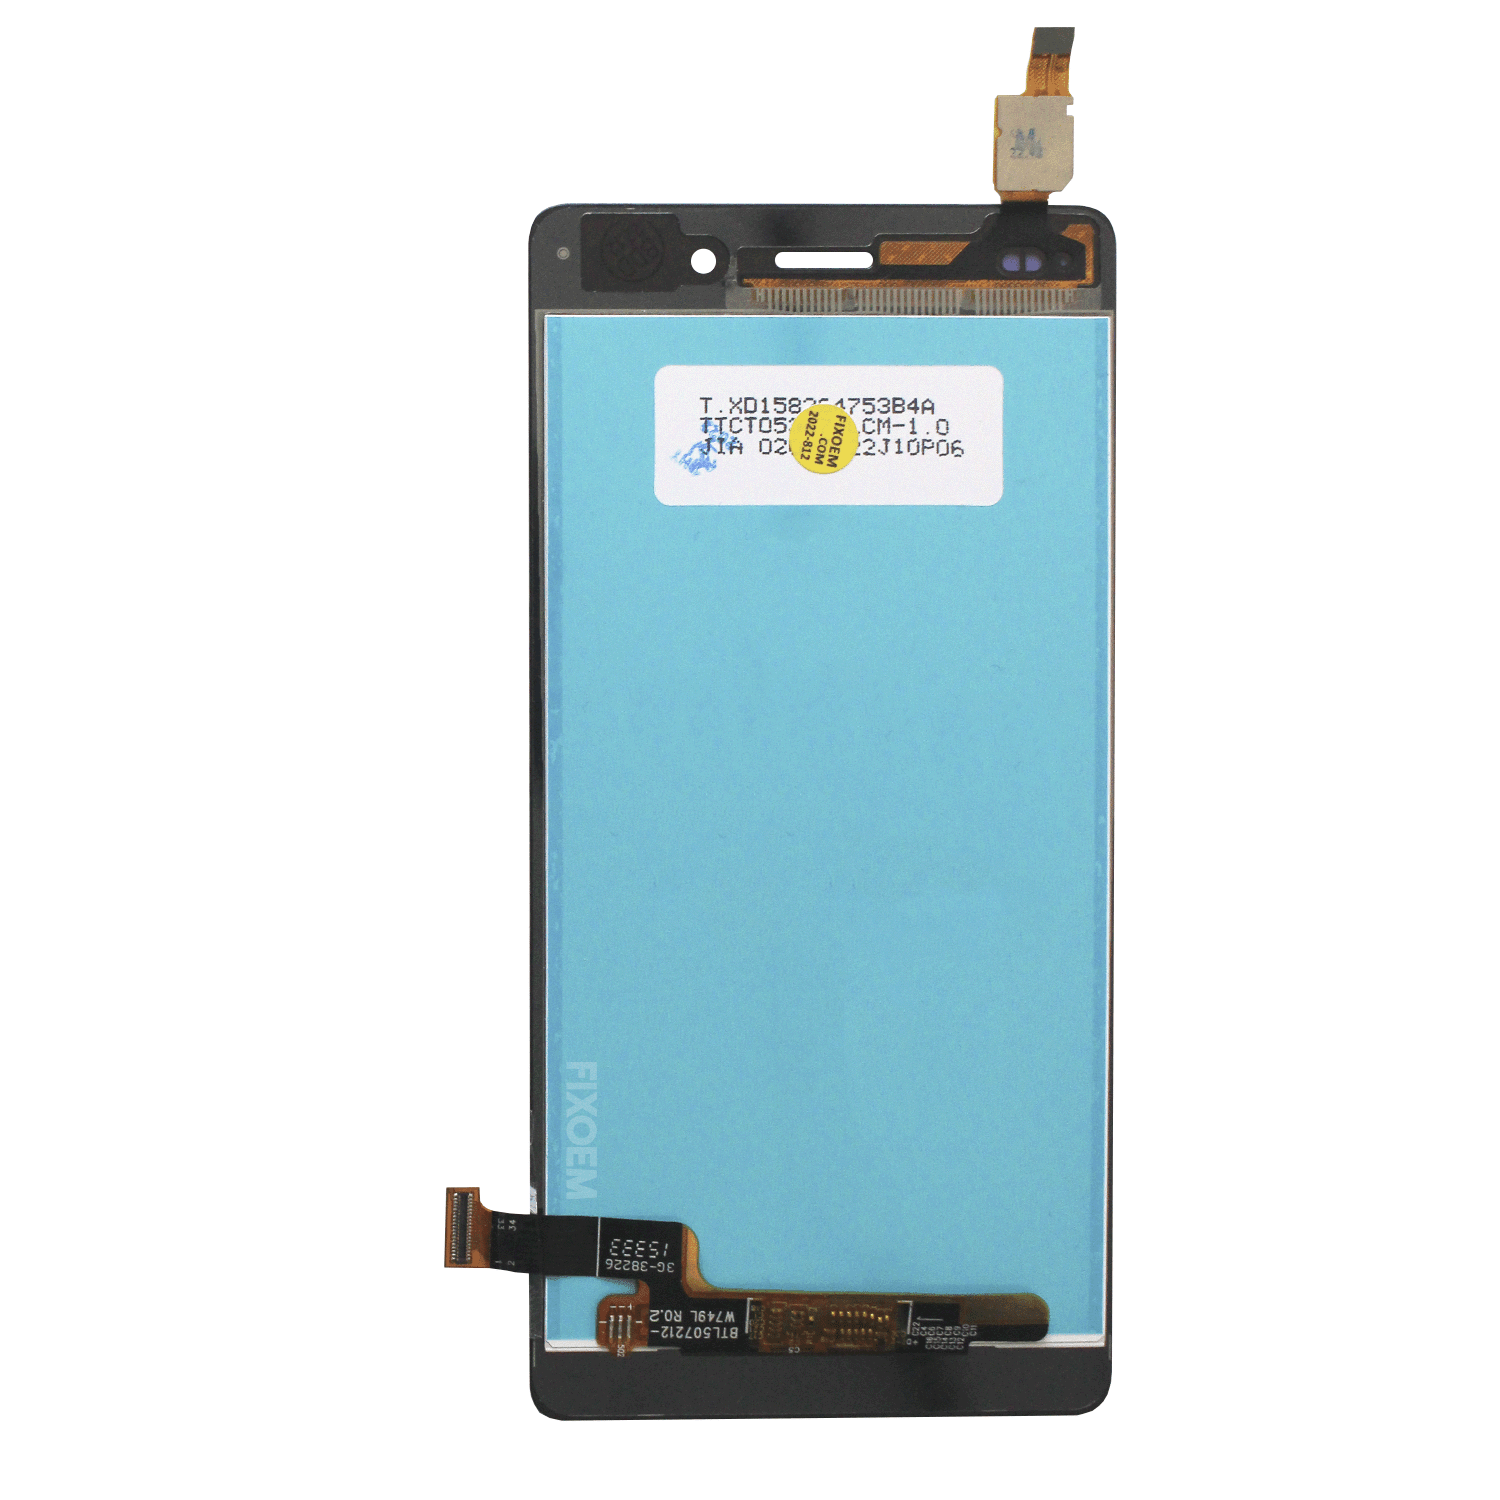 Display Huawei P8 Lite IPS Ale-L23 Ale-L21 Ale-L02 a solo $ 170.00 Refaccion y puestos celulares, refurbish y microelectronica.- FixOEM